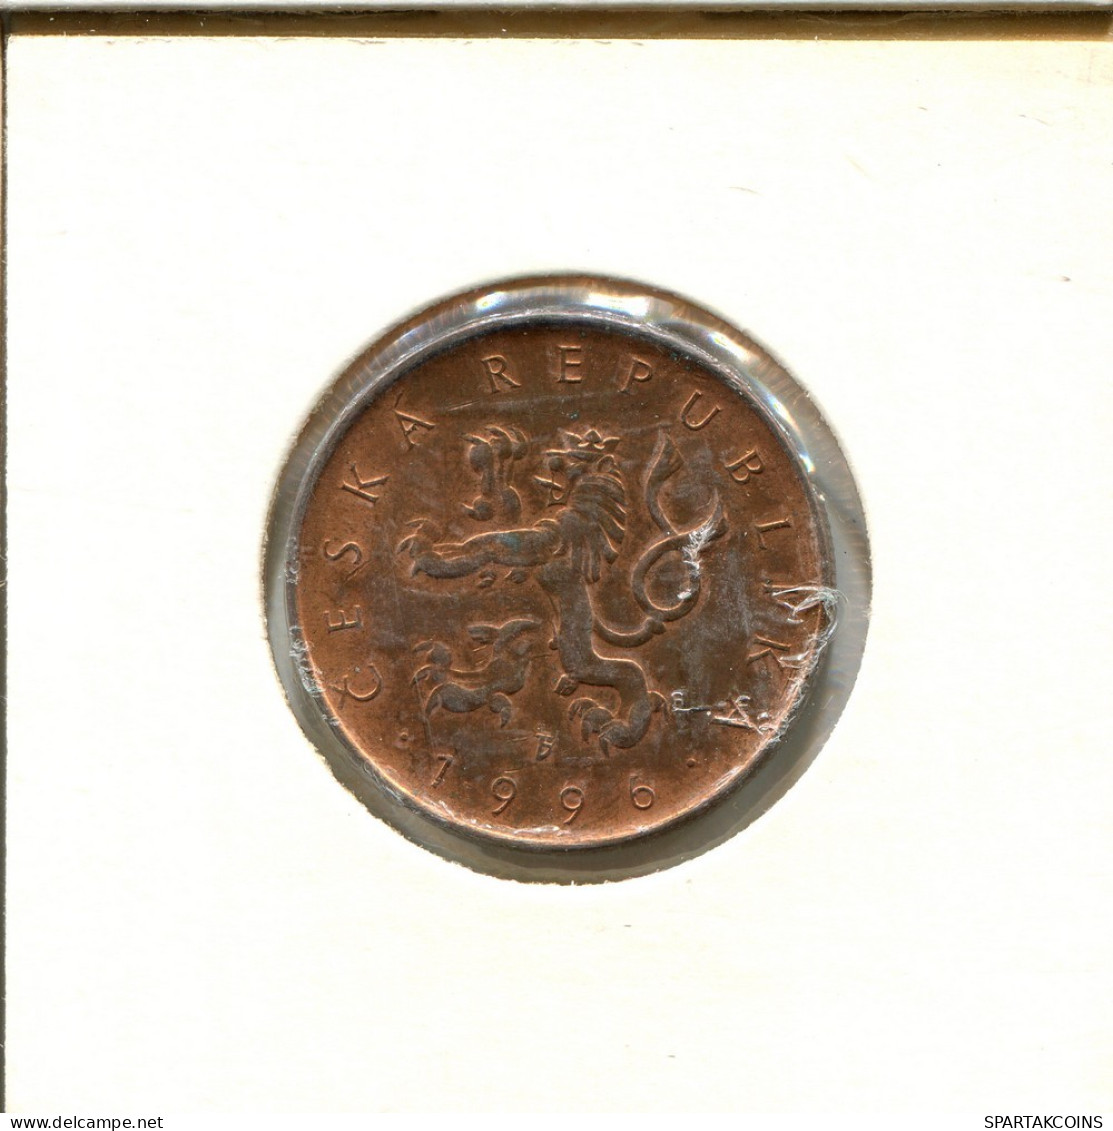 10 KORUN 1996 CZECH REPUBLIC Coin #AS929.U.A - Tschechische Rep.